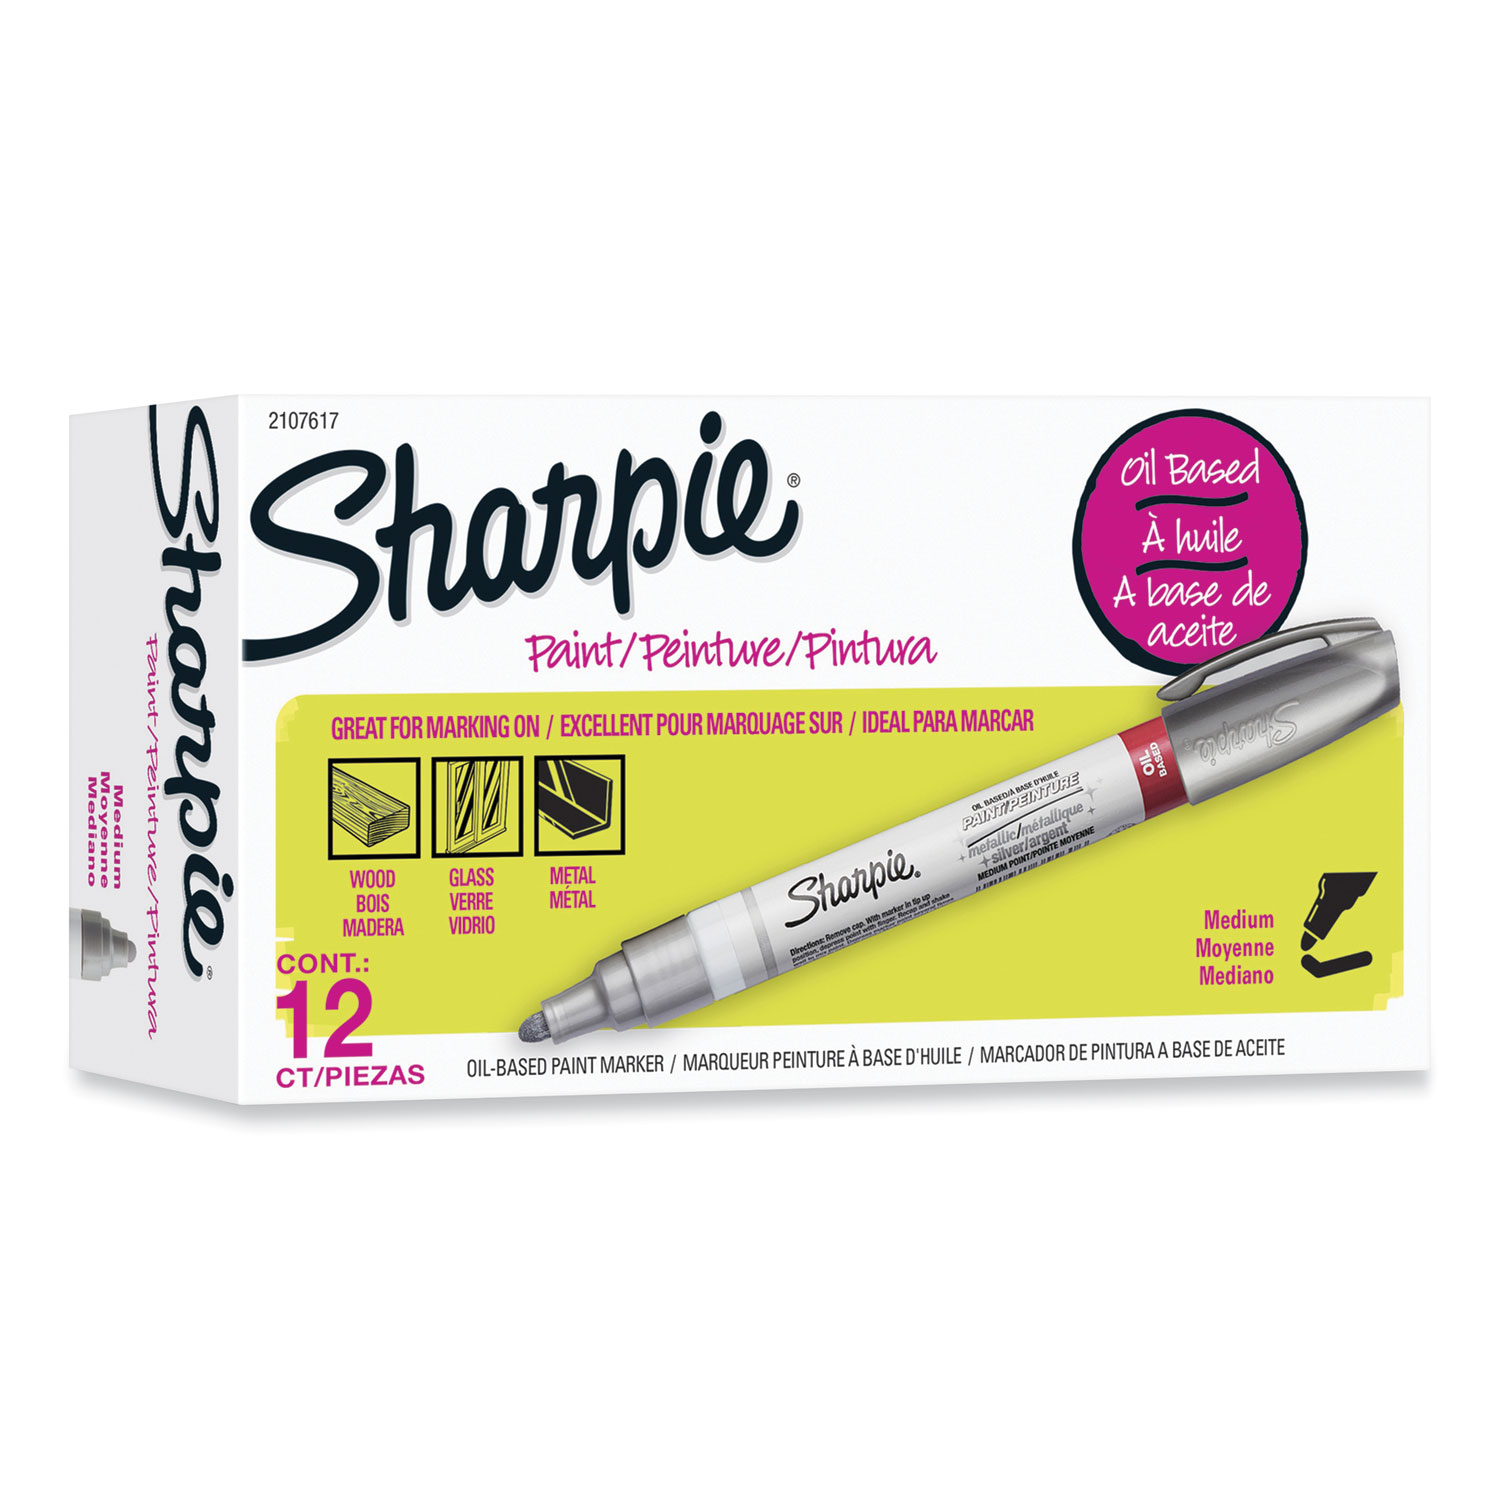 Sharpie Metallic Permanent Marker, Medium Chisel Tip, Silver, Dozen